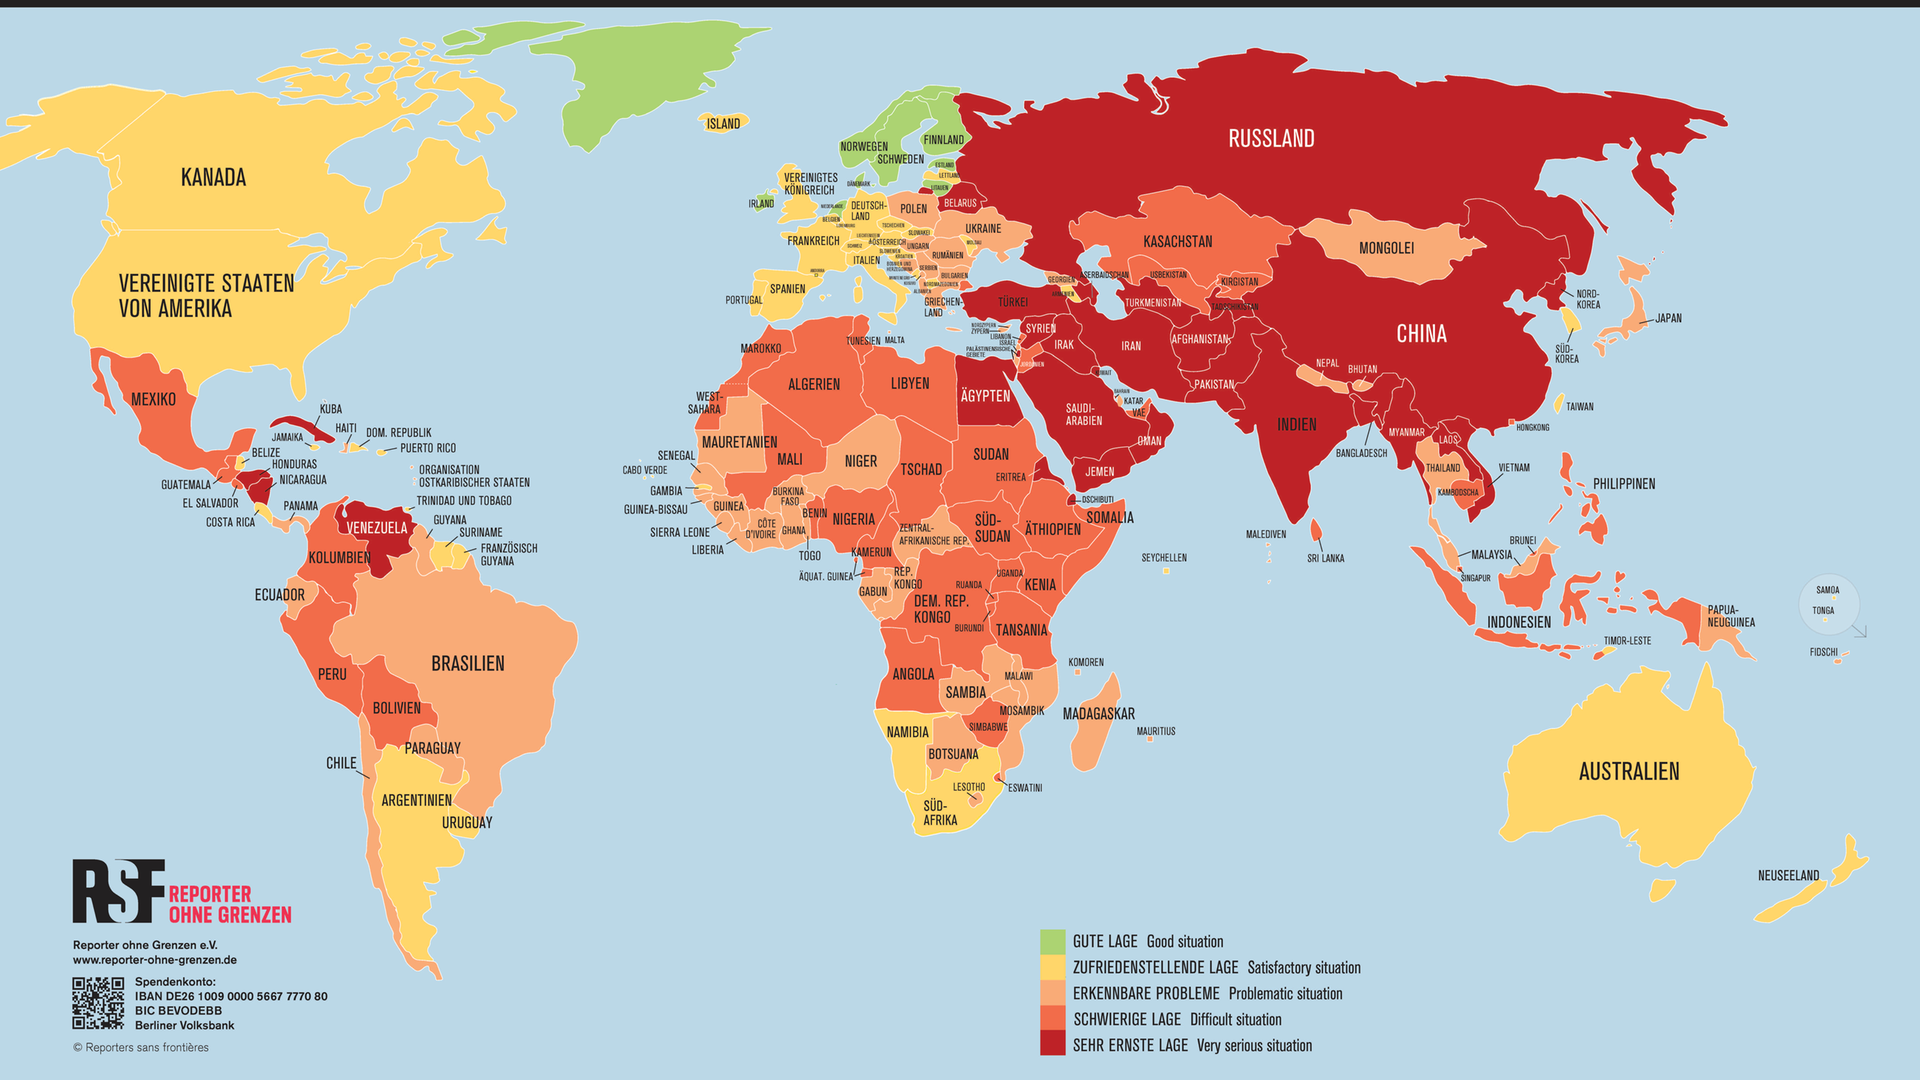 Das Foto zeigt das Ausmaß der Pressefreiheit in den einzelnen Ländern auf einer Weltkarte . 